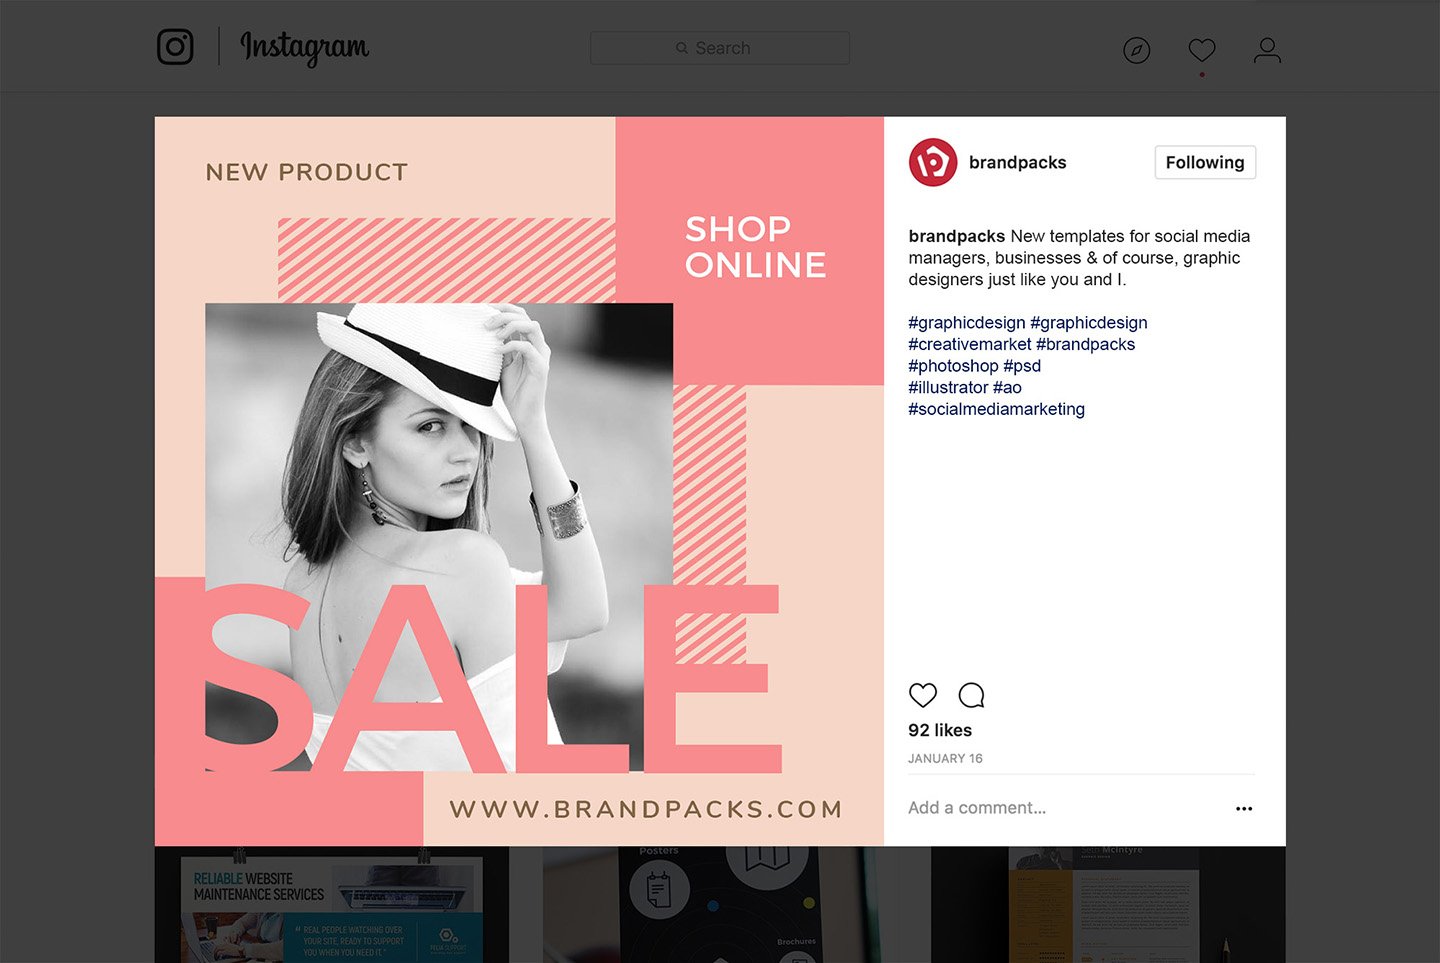 粉色系女性化妆品服装电商营销海报Instagram模板 Social Media Templates Pack Vol.5插图6